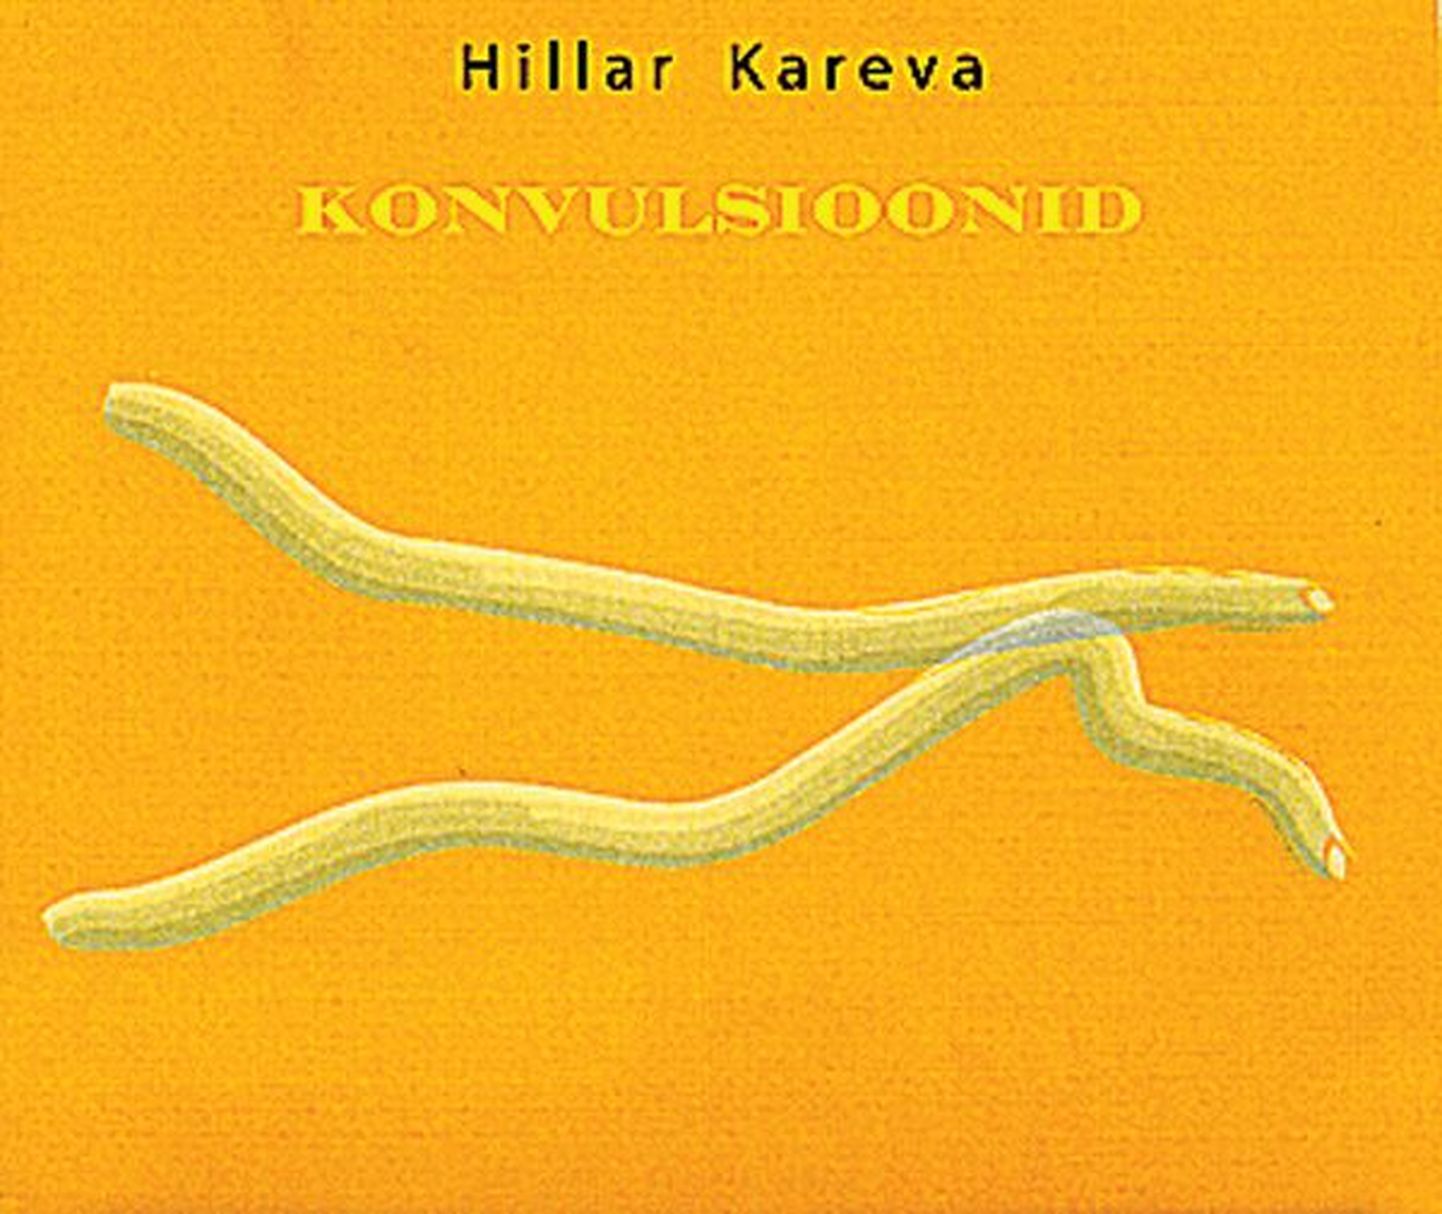 Hillar Kareva, «Konvulsioonid», CD, 2009.